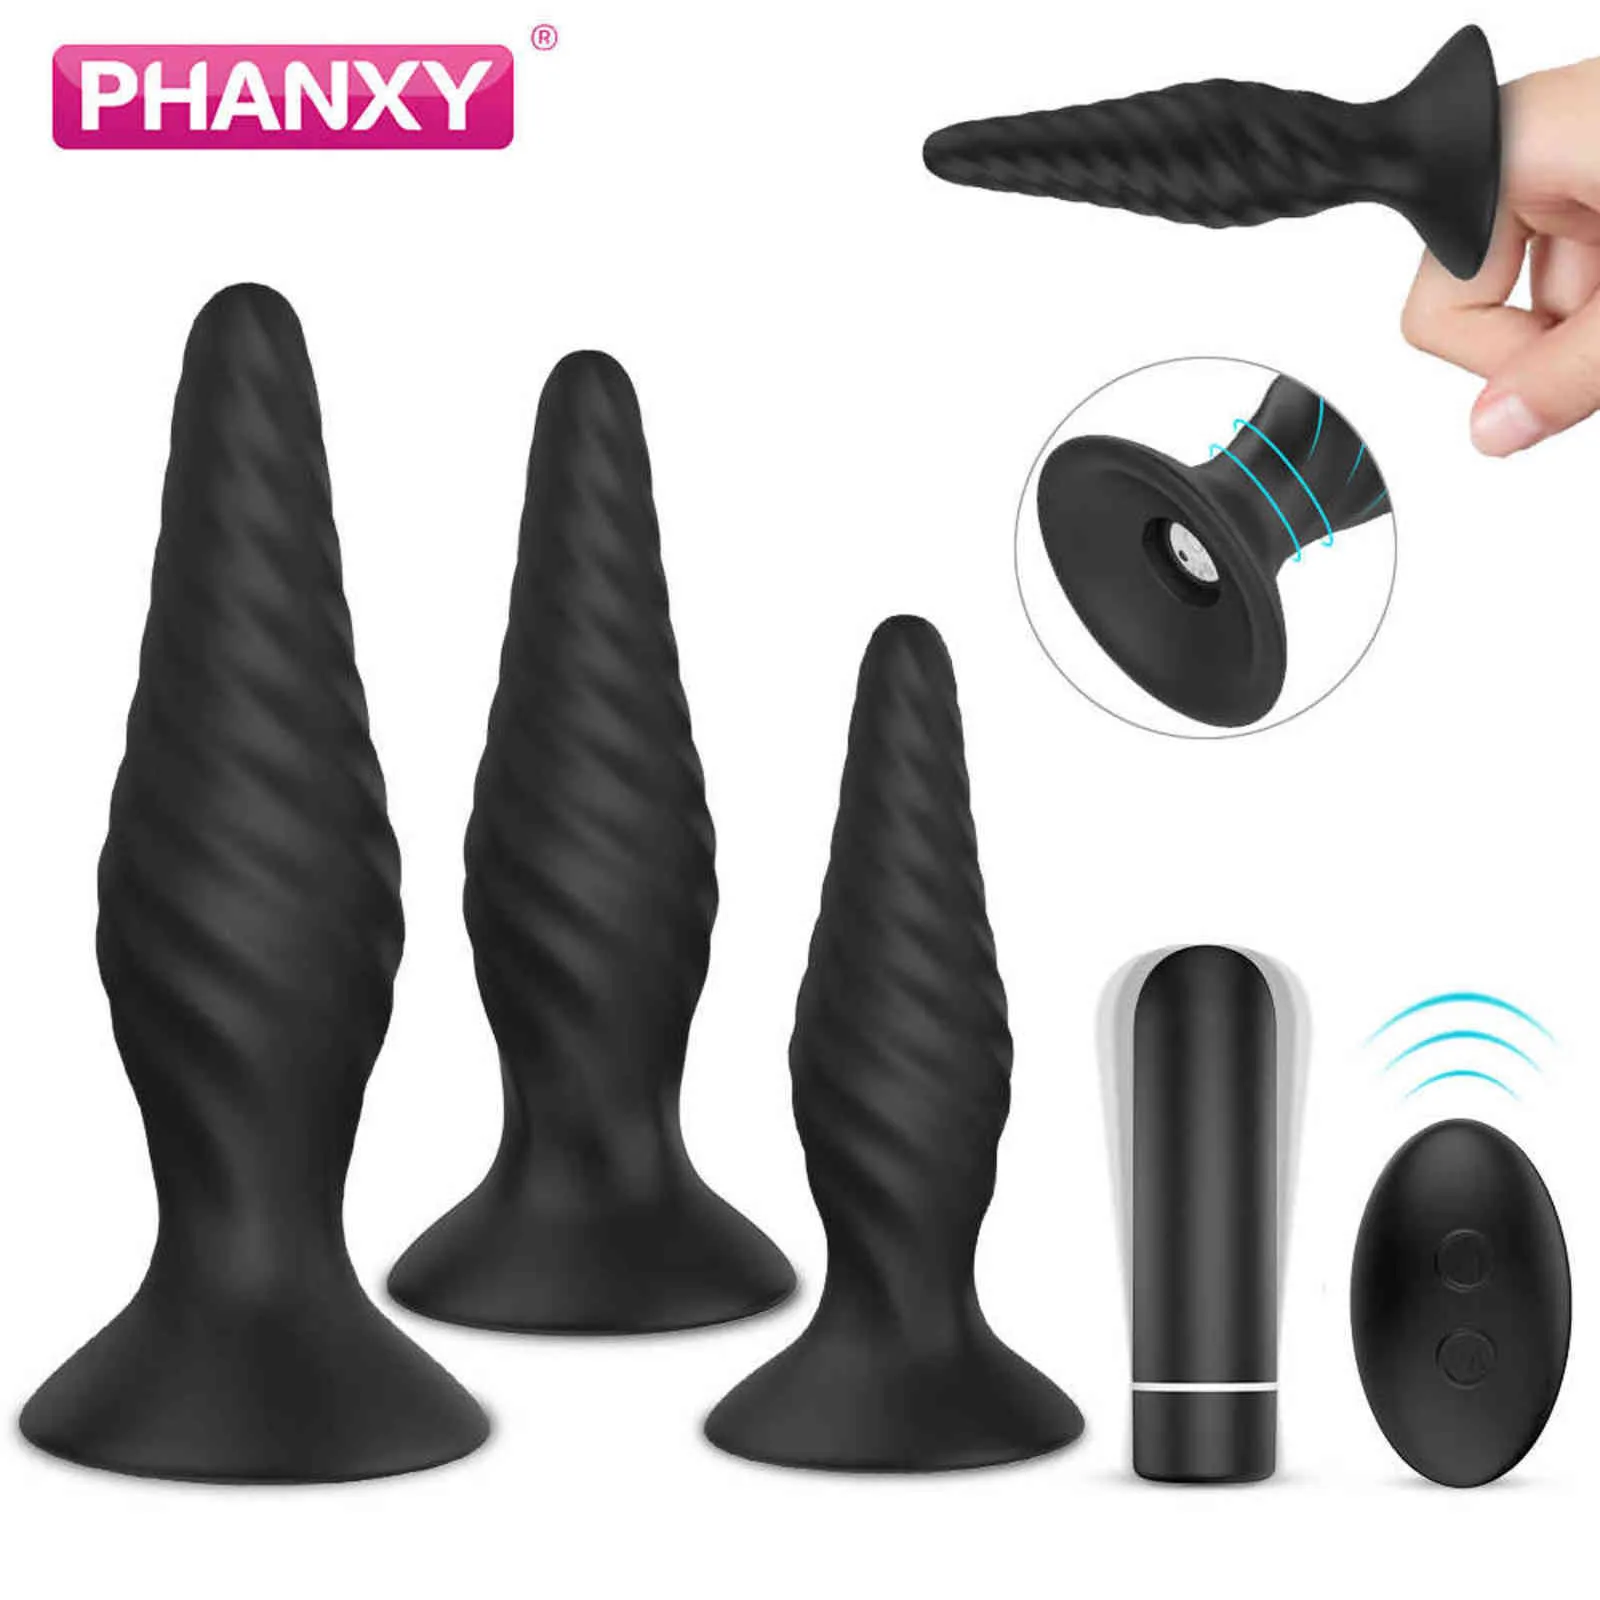 NXY Sexo Anal Brinquedos Phanxy Butt Plug Set Dilator Tubo Grande Enorme Brinquedo Vibrador Vibrating Ass Cork Silicone para Homem Mulheres Produtos 1201